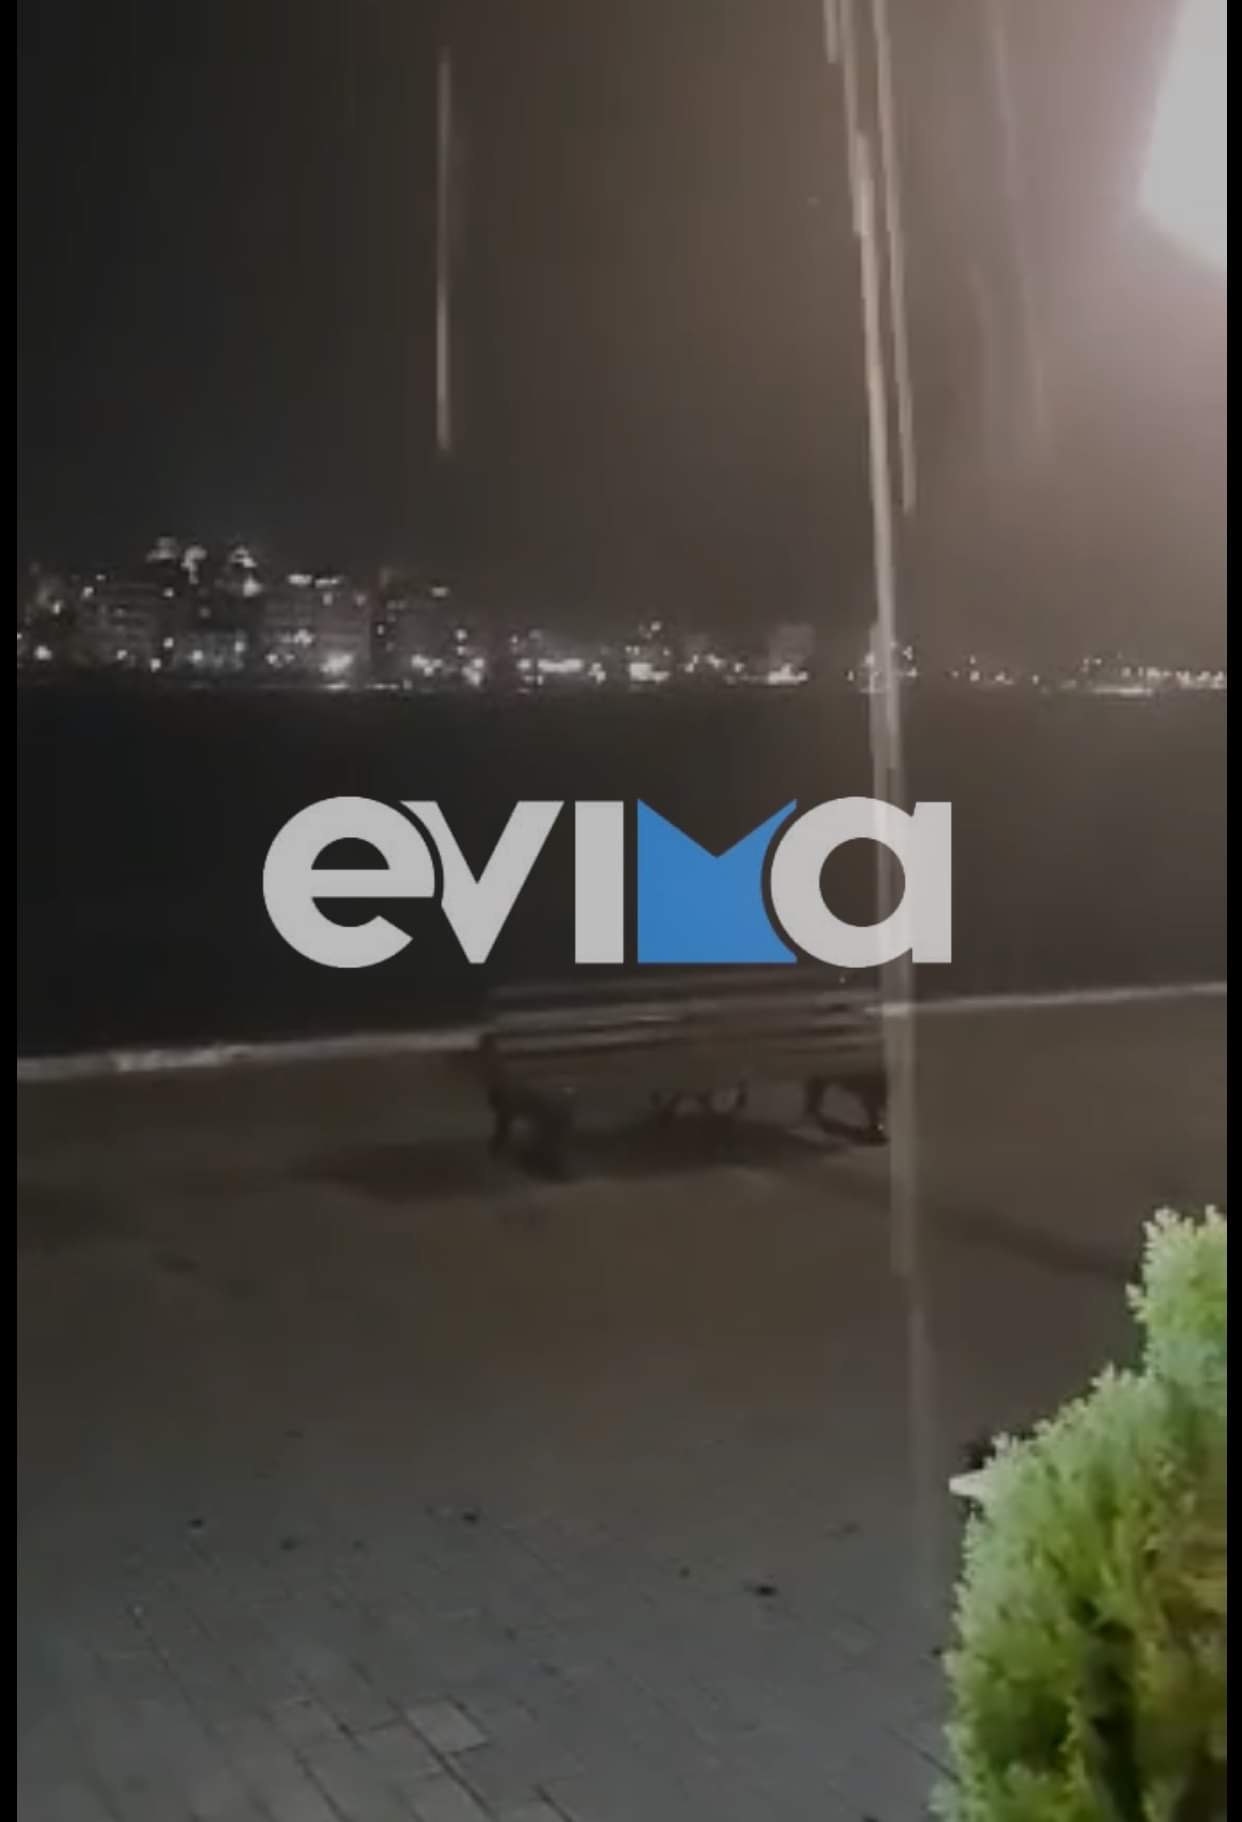 Κακοκαιρία «Αθηνά»: Σφοδρή καταιγίδα στη Χαλκίδα – Άνοιξαν οι ουρανοί [εικόνες&βίντεο]